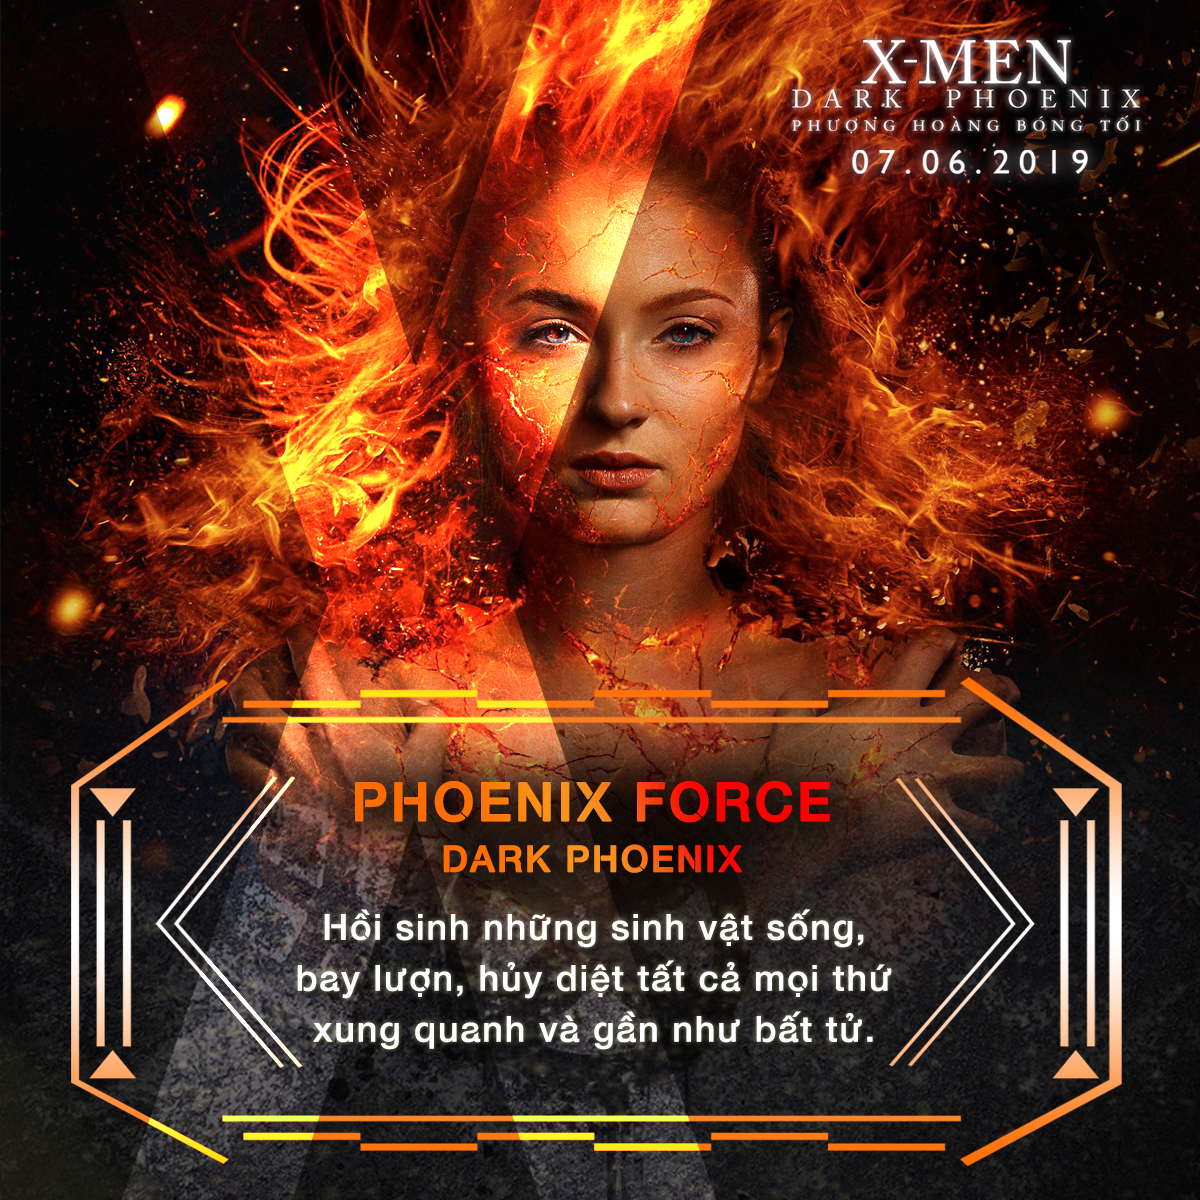 Choáng ngợp với sức mạnh bá đạo của người đẹp Jean Grey trong vũ trụ dị nhân X-Men - Ảnh 9.